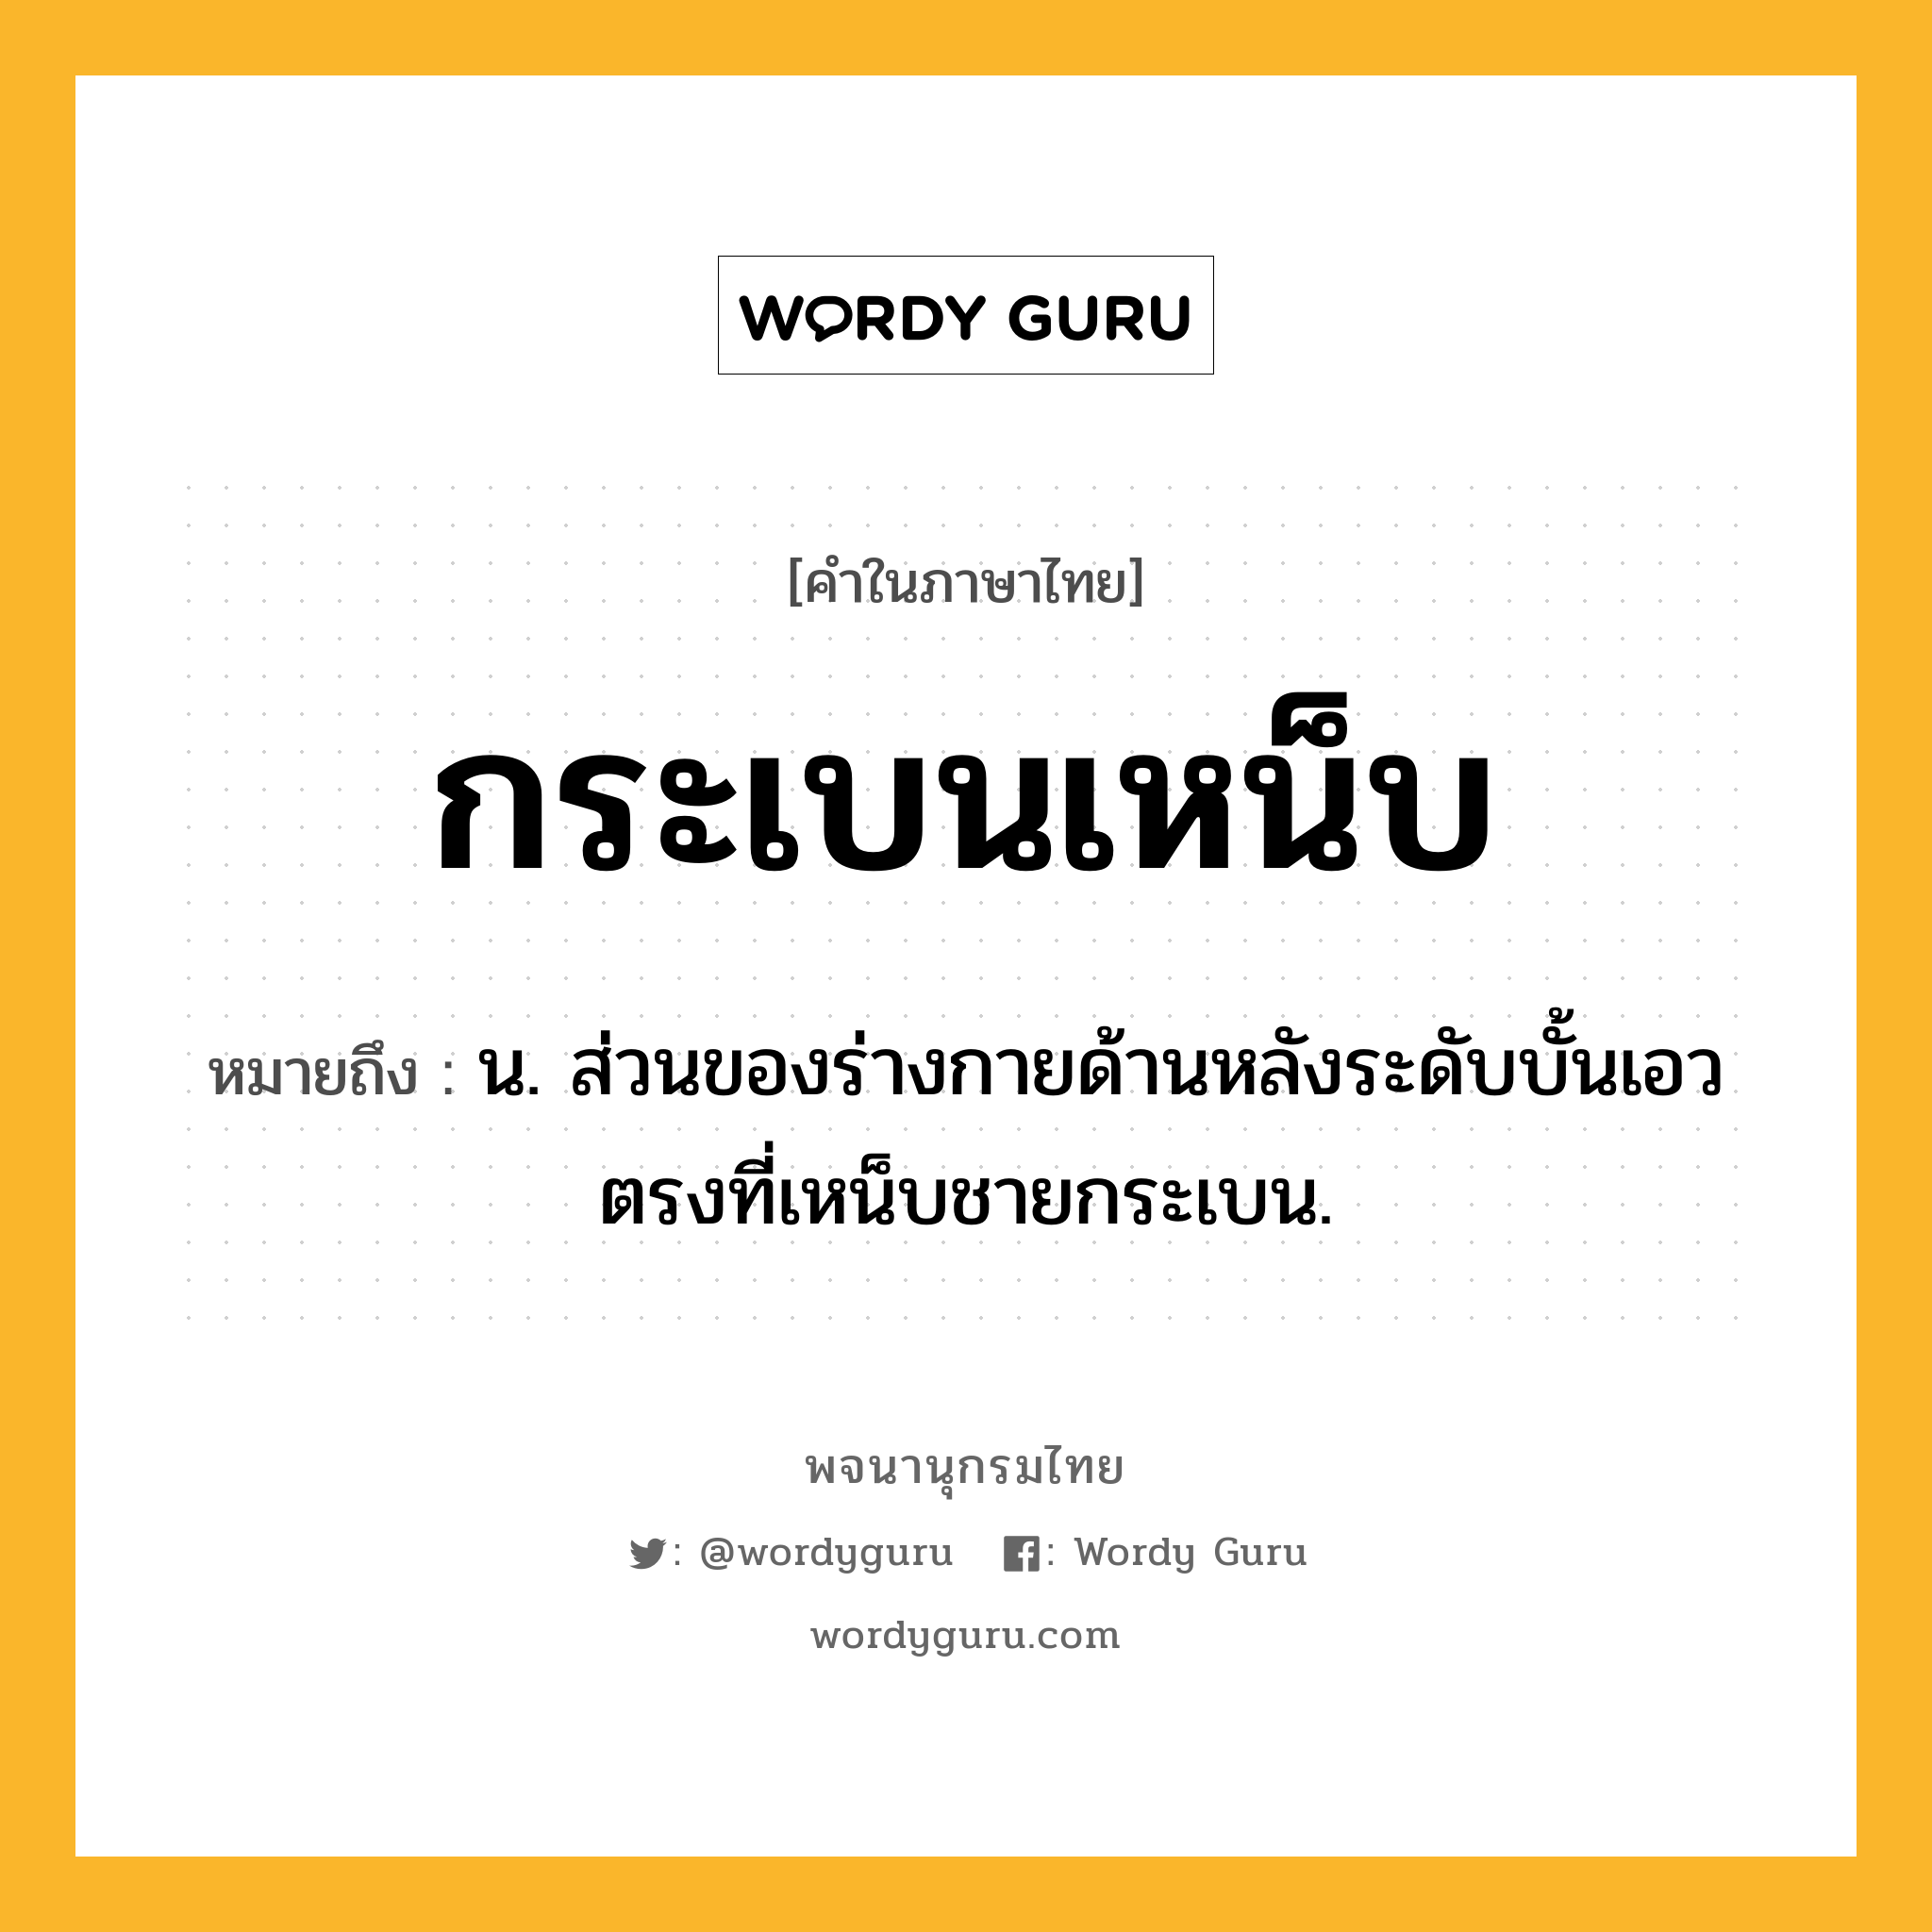 กระเบนเหน็บ ความหมาย หมายถึงอะไร?, คำในภาษาไทย กระเบนเหน็บ หมายถึง น. ส่วนของร่างกายด้านหลังระดับบั้นเอว ตรงที่เหน็บชายกระเบน.